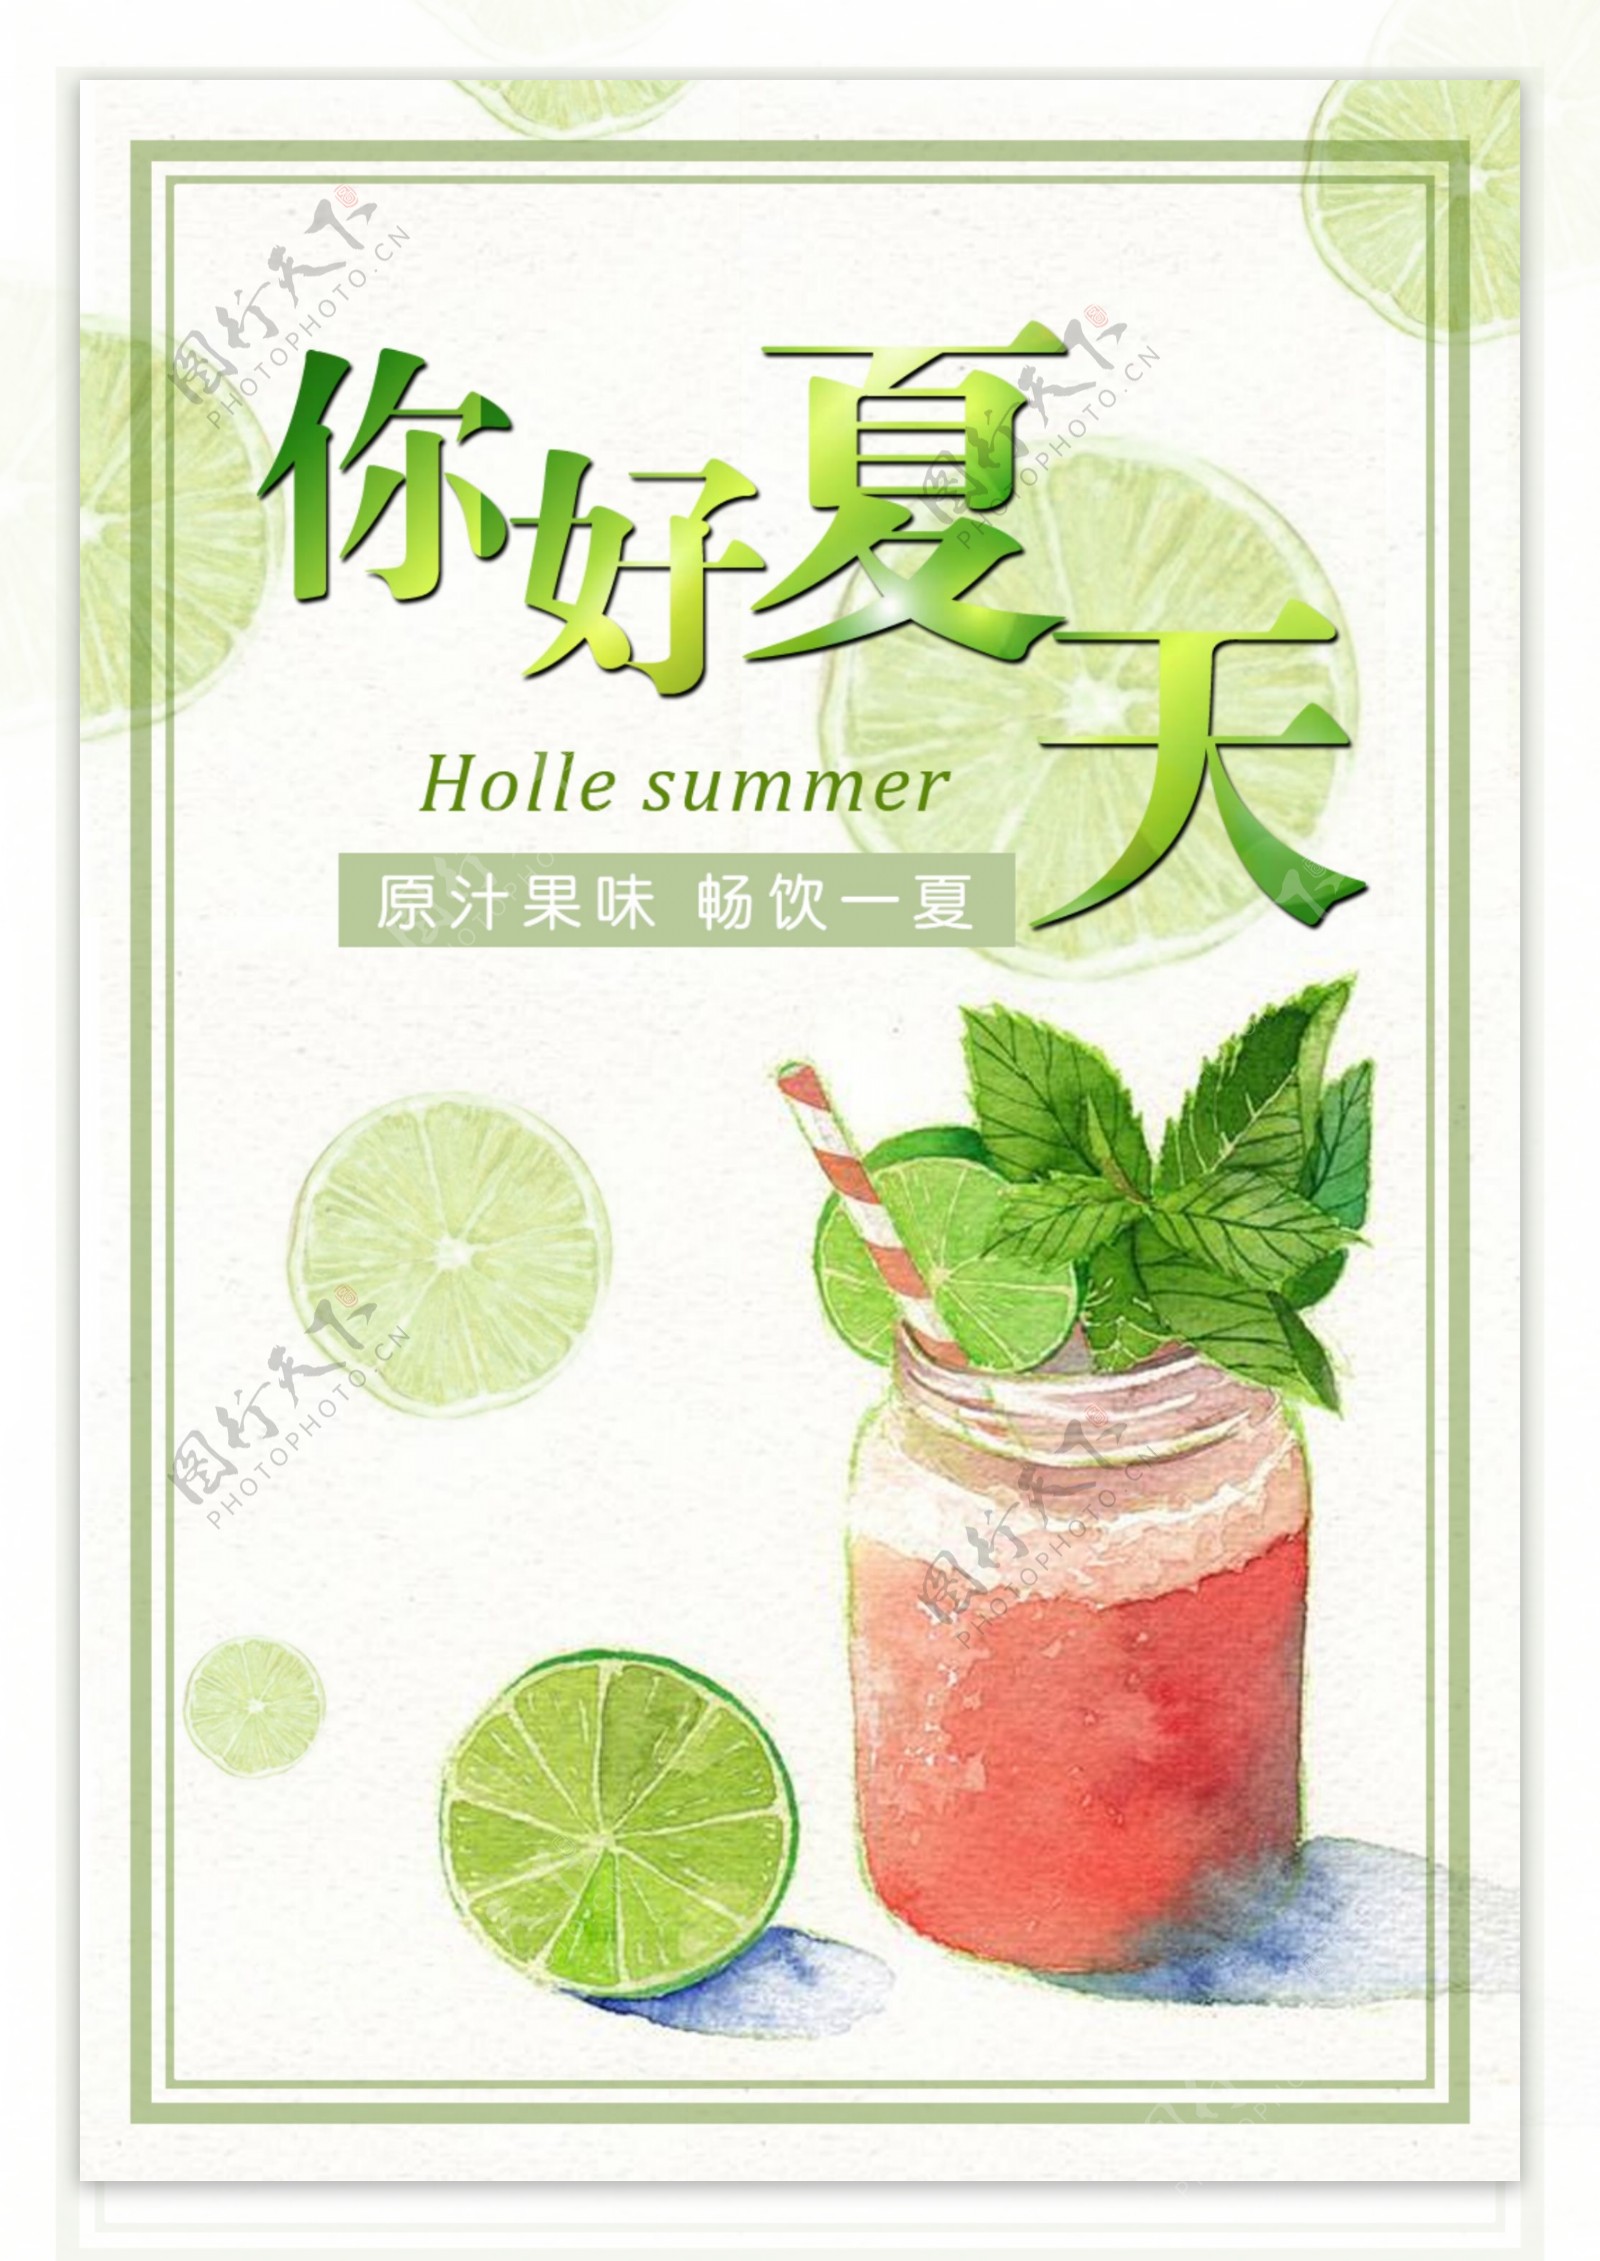 夏季夏日饮品促销海报